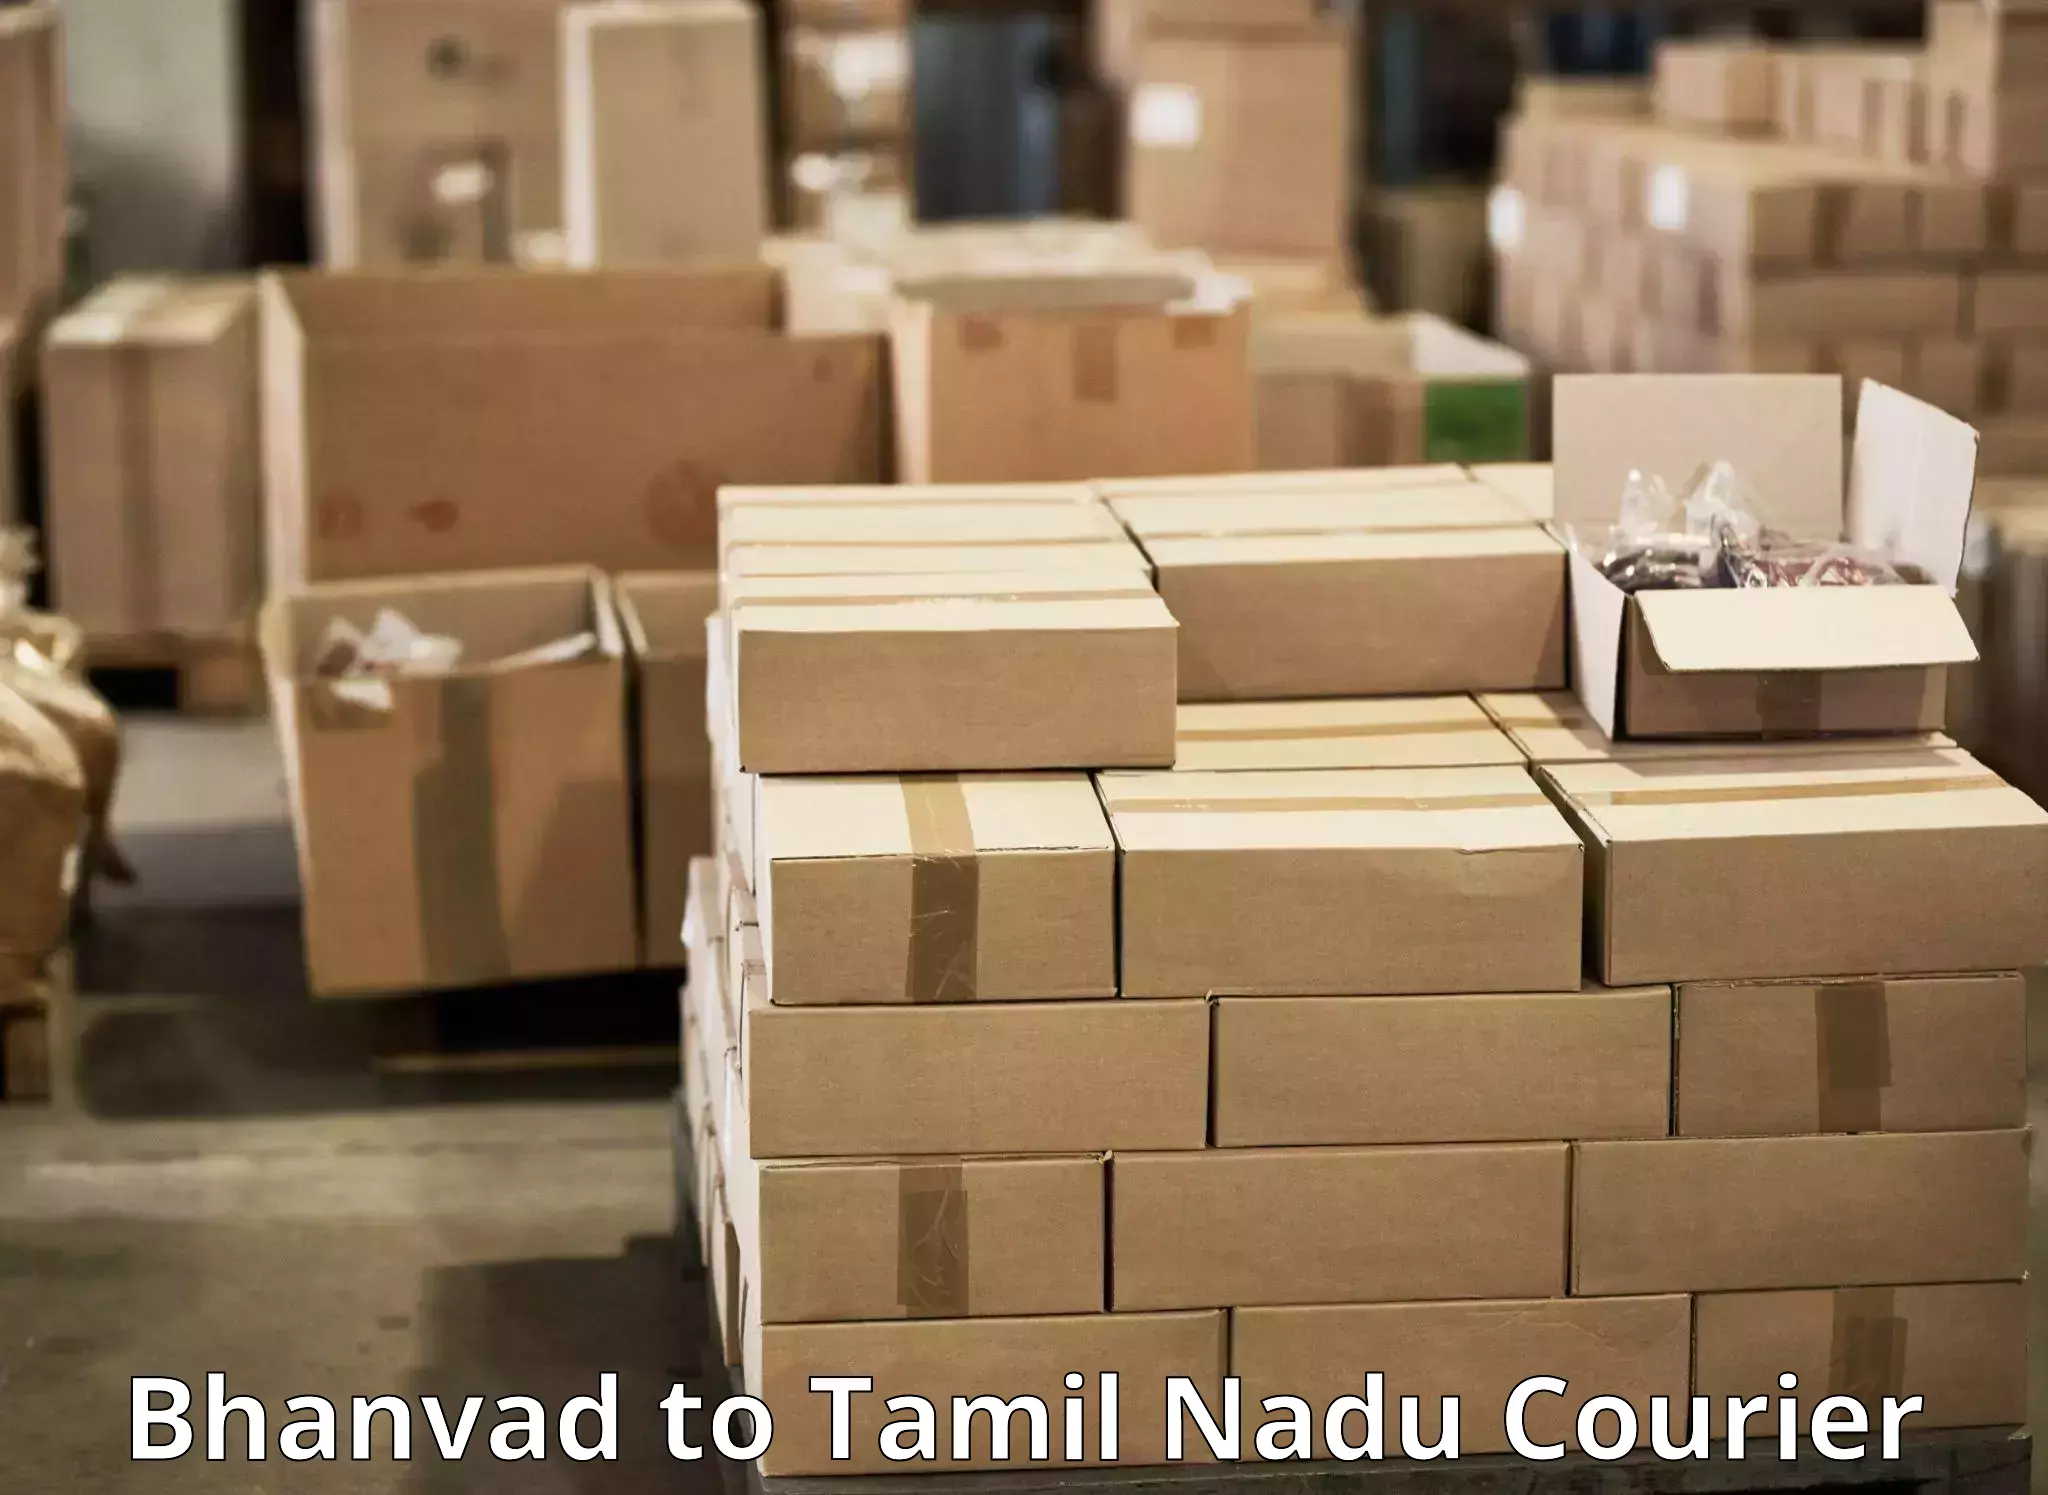 High-capacity parcel service Bhanvad to Avinashi